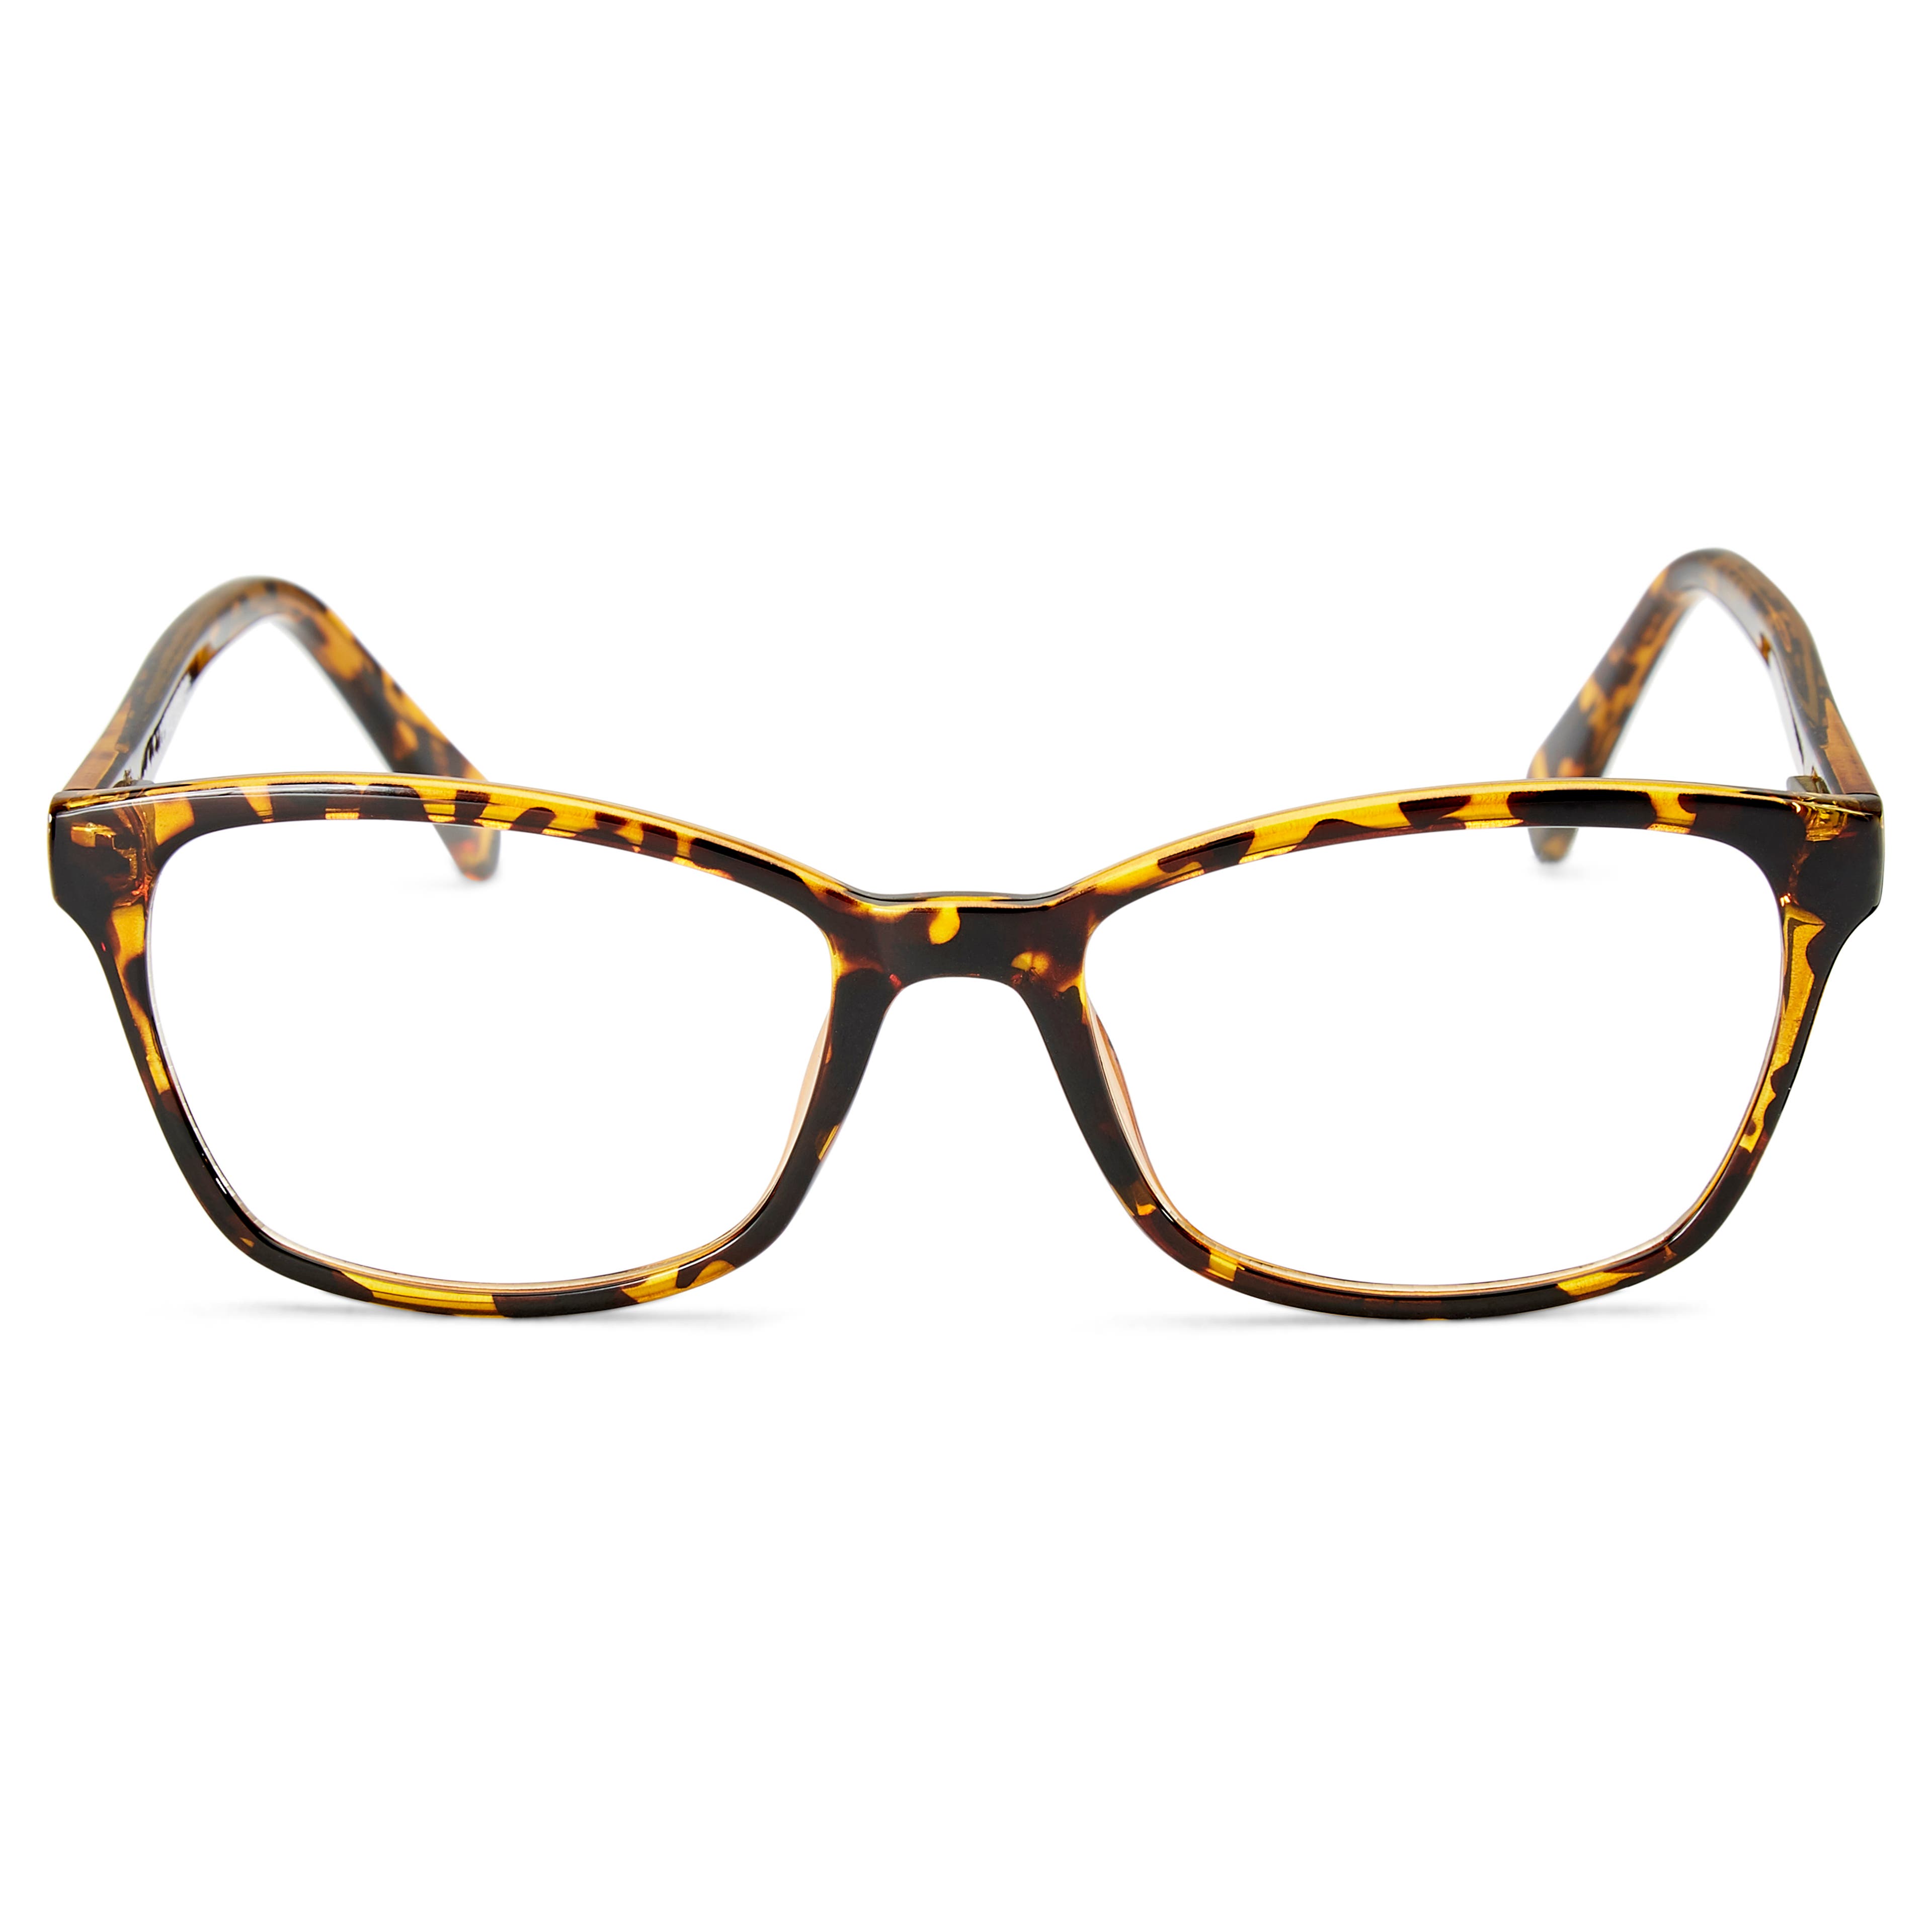 Ταρταρούγα Γυαλιά με Διάφανους Φακούς Faculty